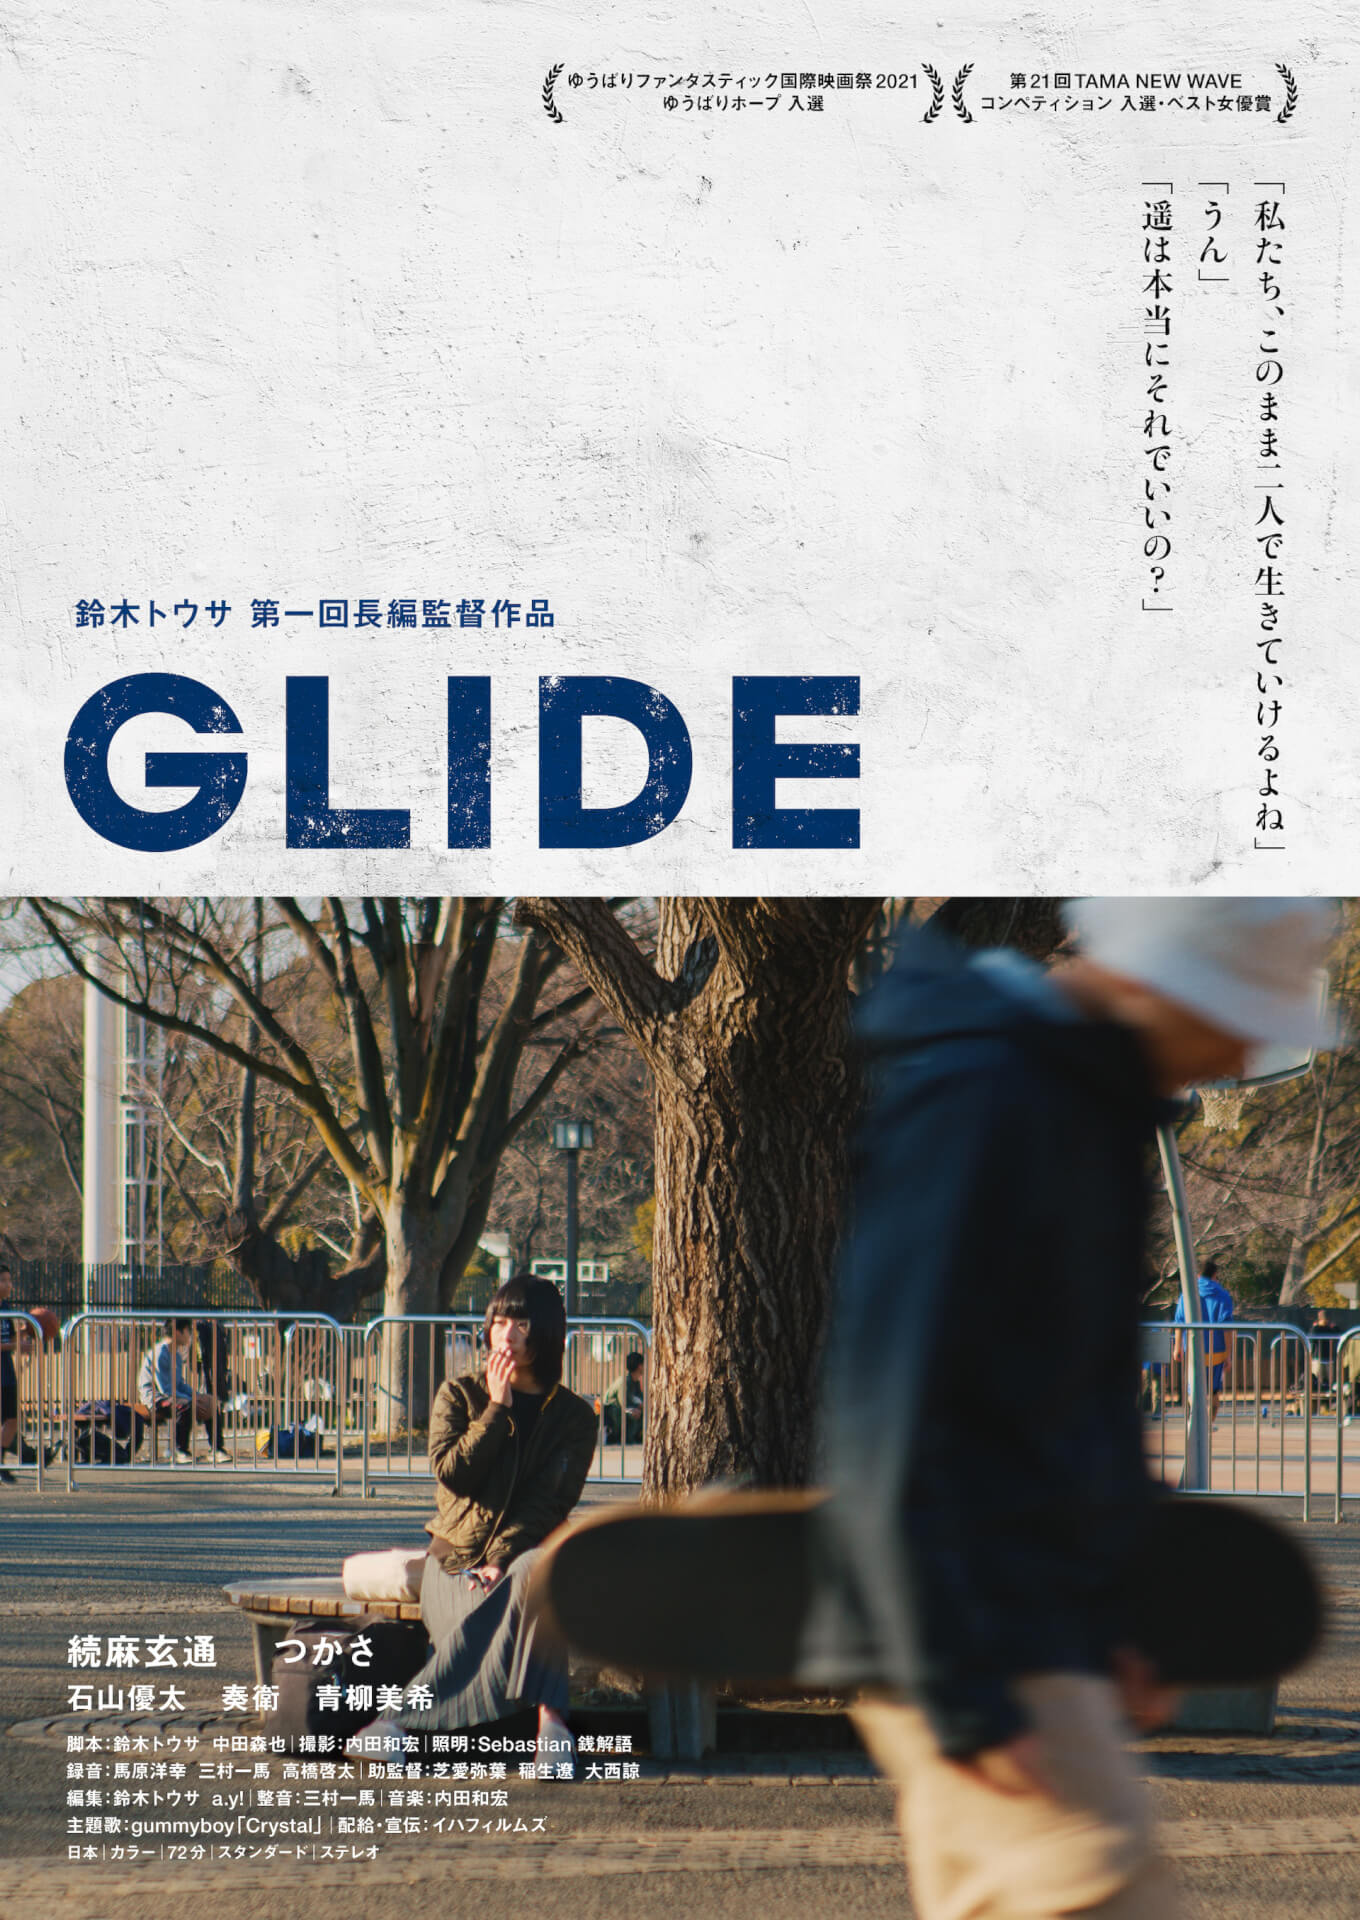 鈴木トウサ監督の映画『GLIDE』が1週間限定公開決定！予告編とポスタービジュアルが解禁 film11021_glide_06